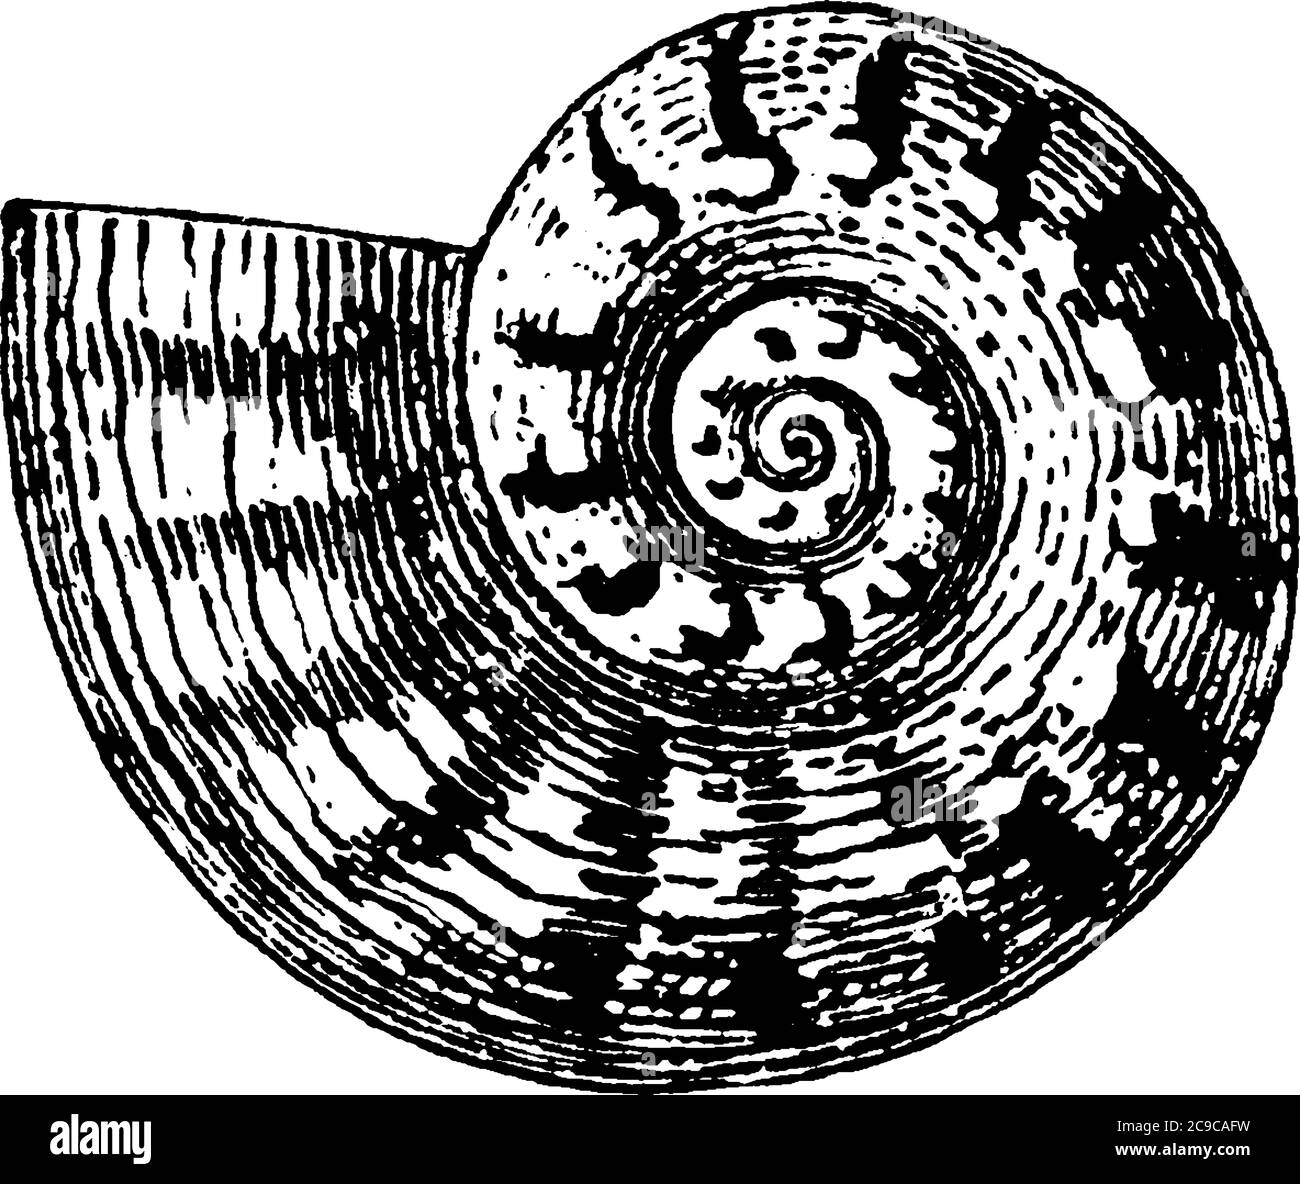 Die Muschel, die hart und spiralförmig ist, erstellt von Tieren, die im Meer leben, Vintage-Linienzeichnung oder Gravur Illustration. Stock Vektor